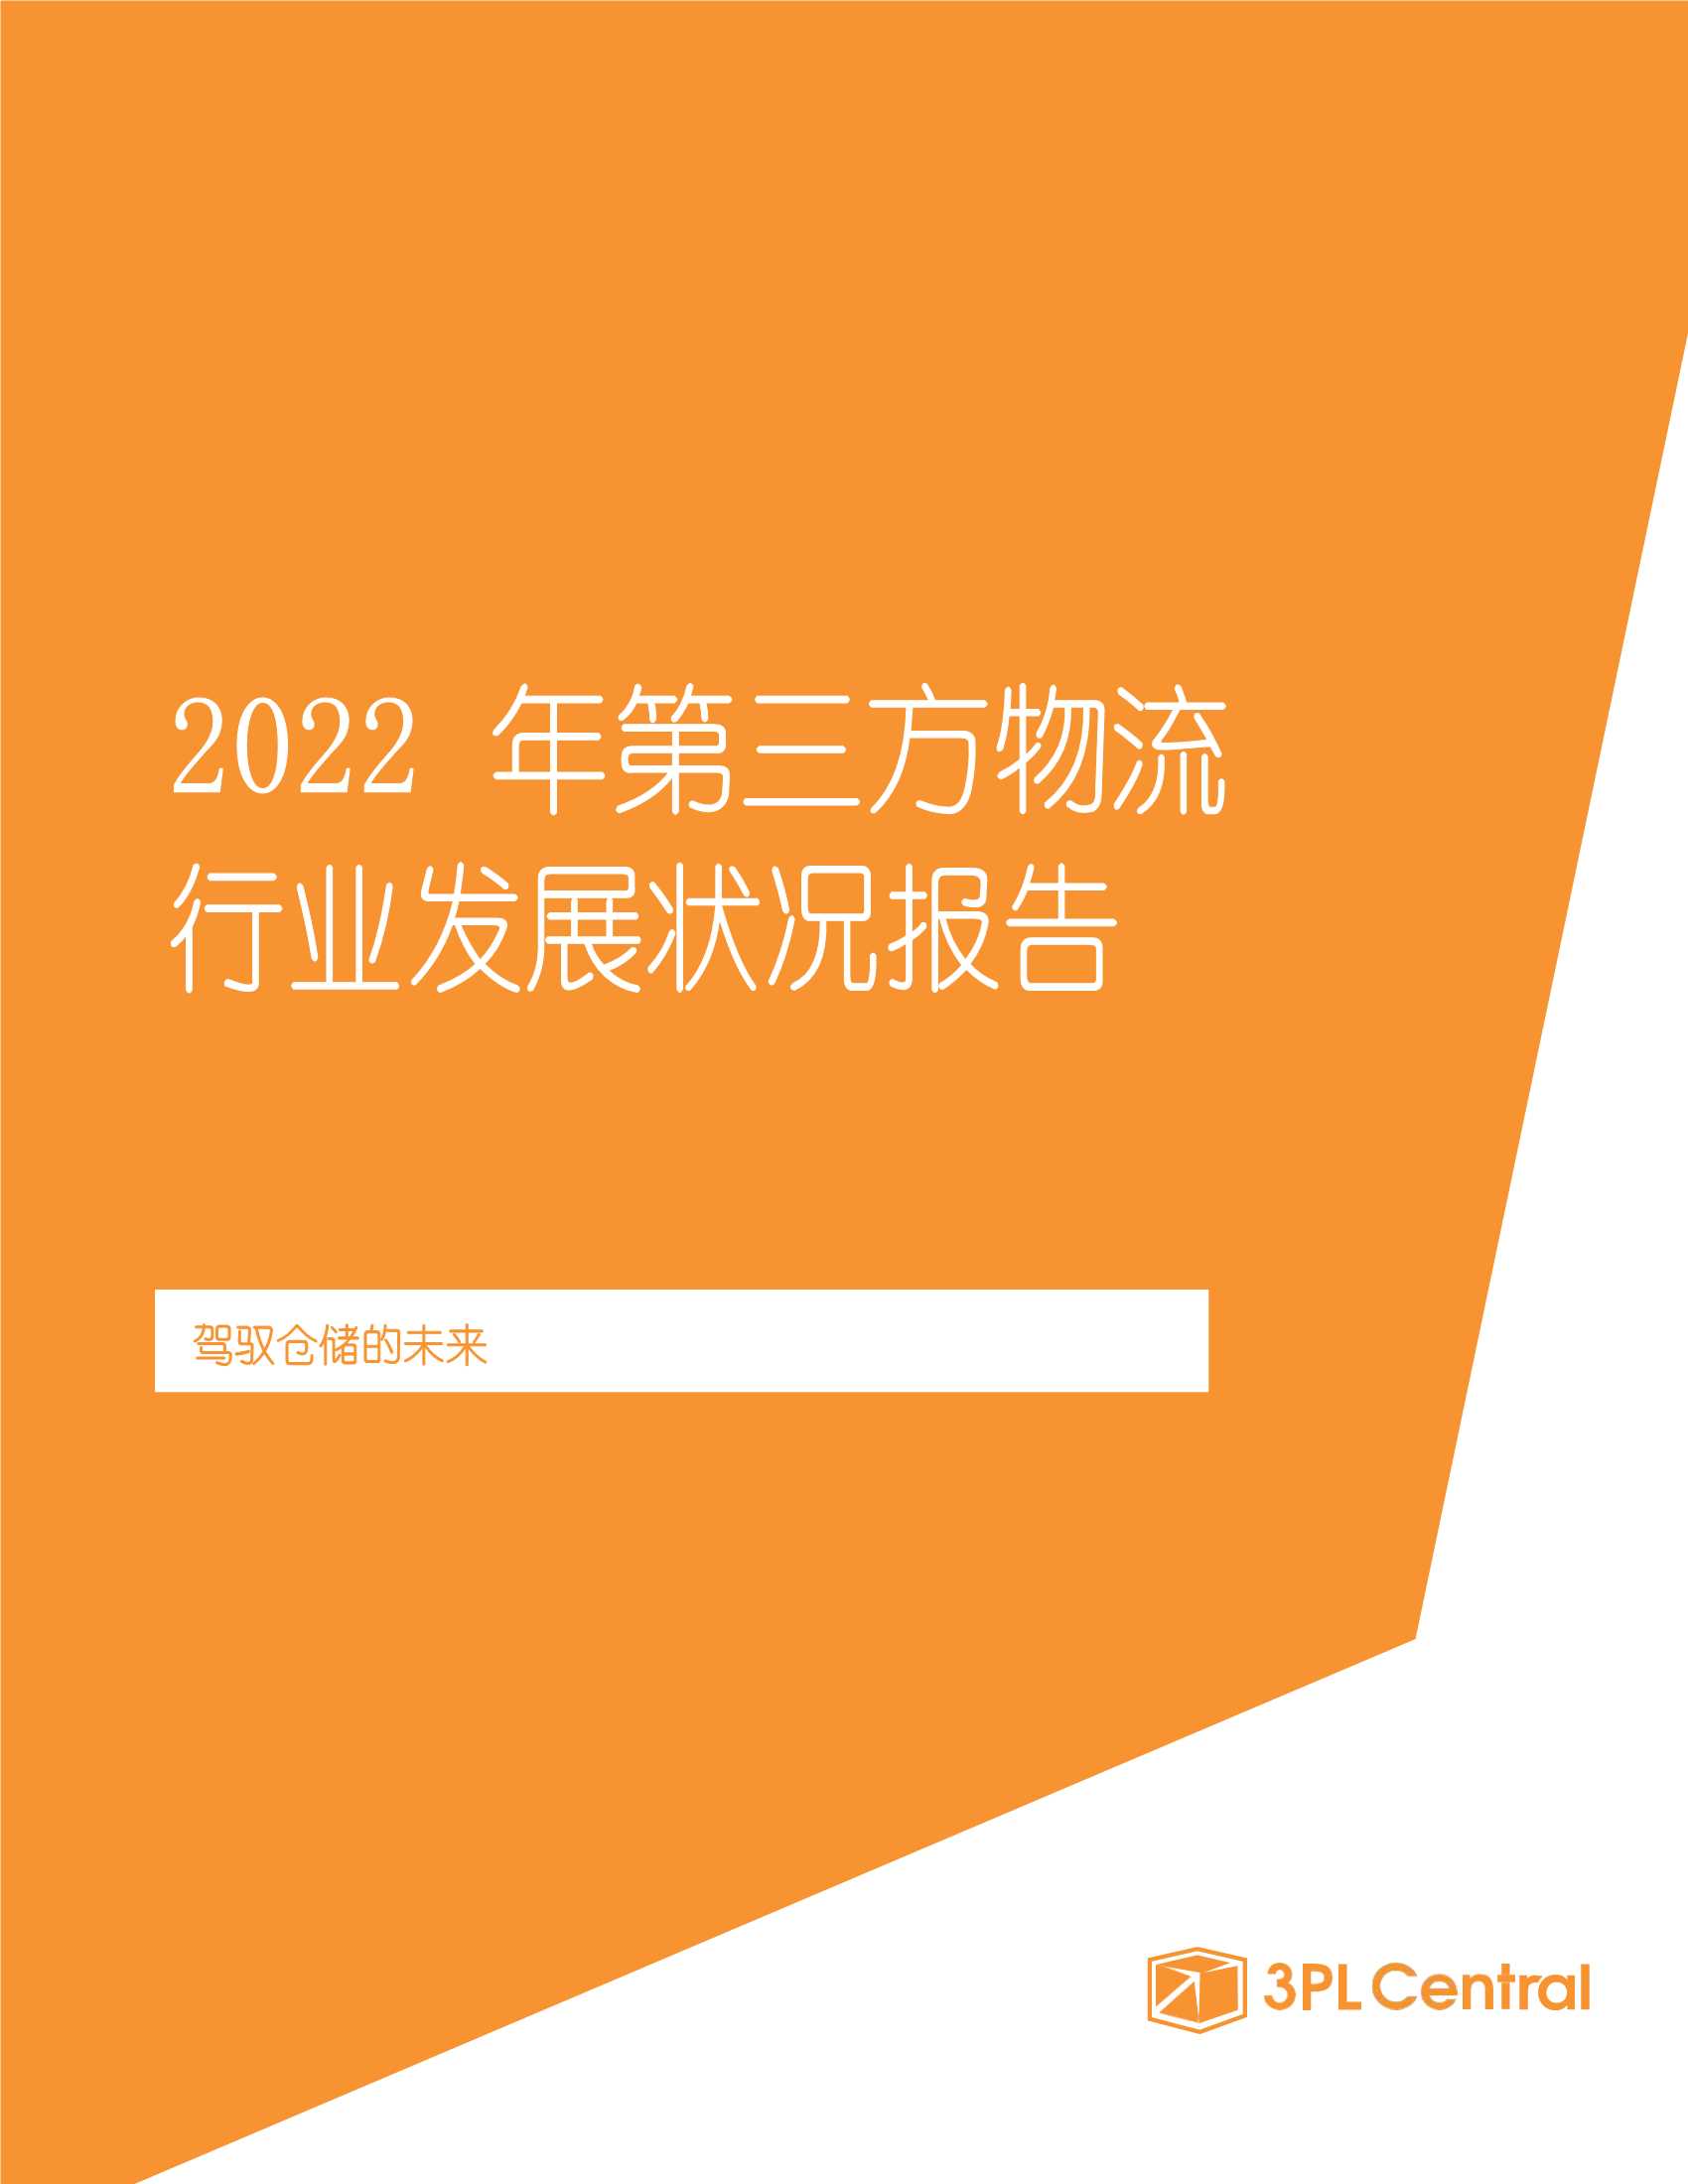 3PL Central-2022年第三方物流行业发展状况报告：驾驭仓储的未来-2022.03-22页